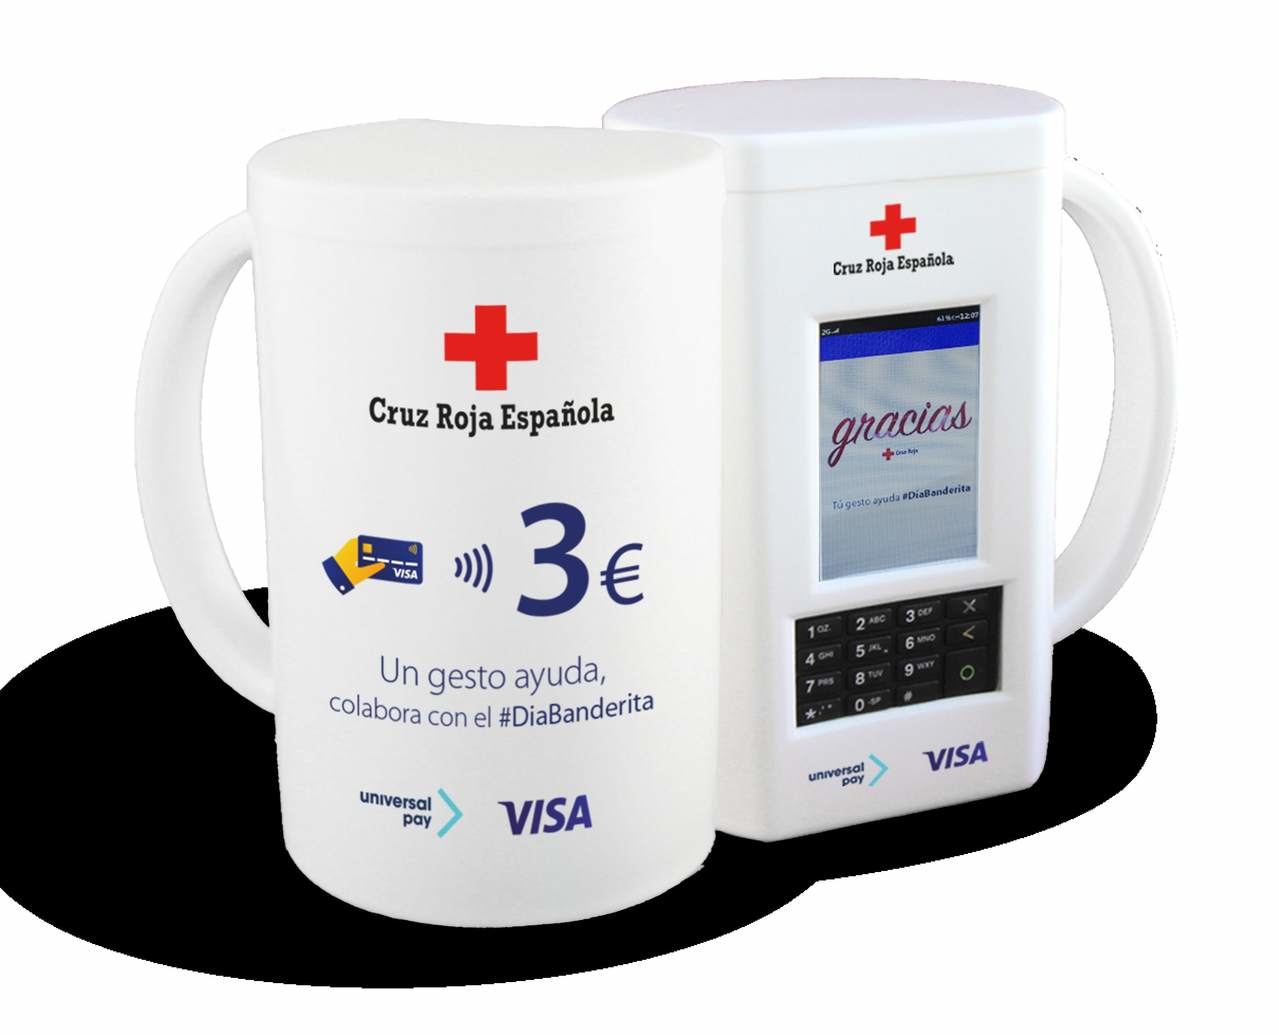 Visa y UniversalPay, crean una hucha ‘contactless’ para la Cruz Roja